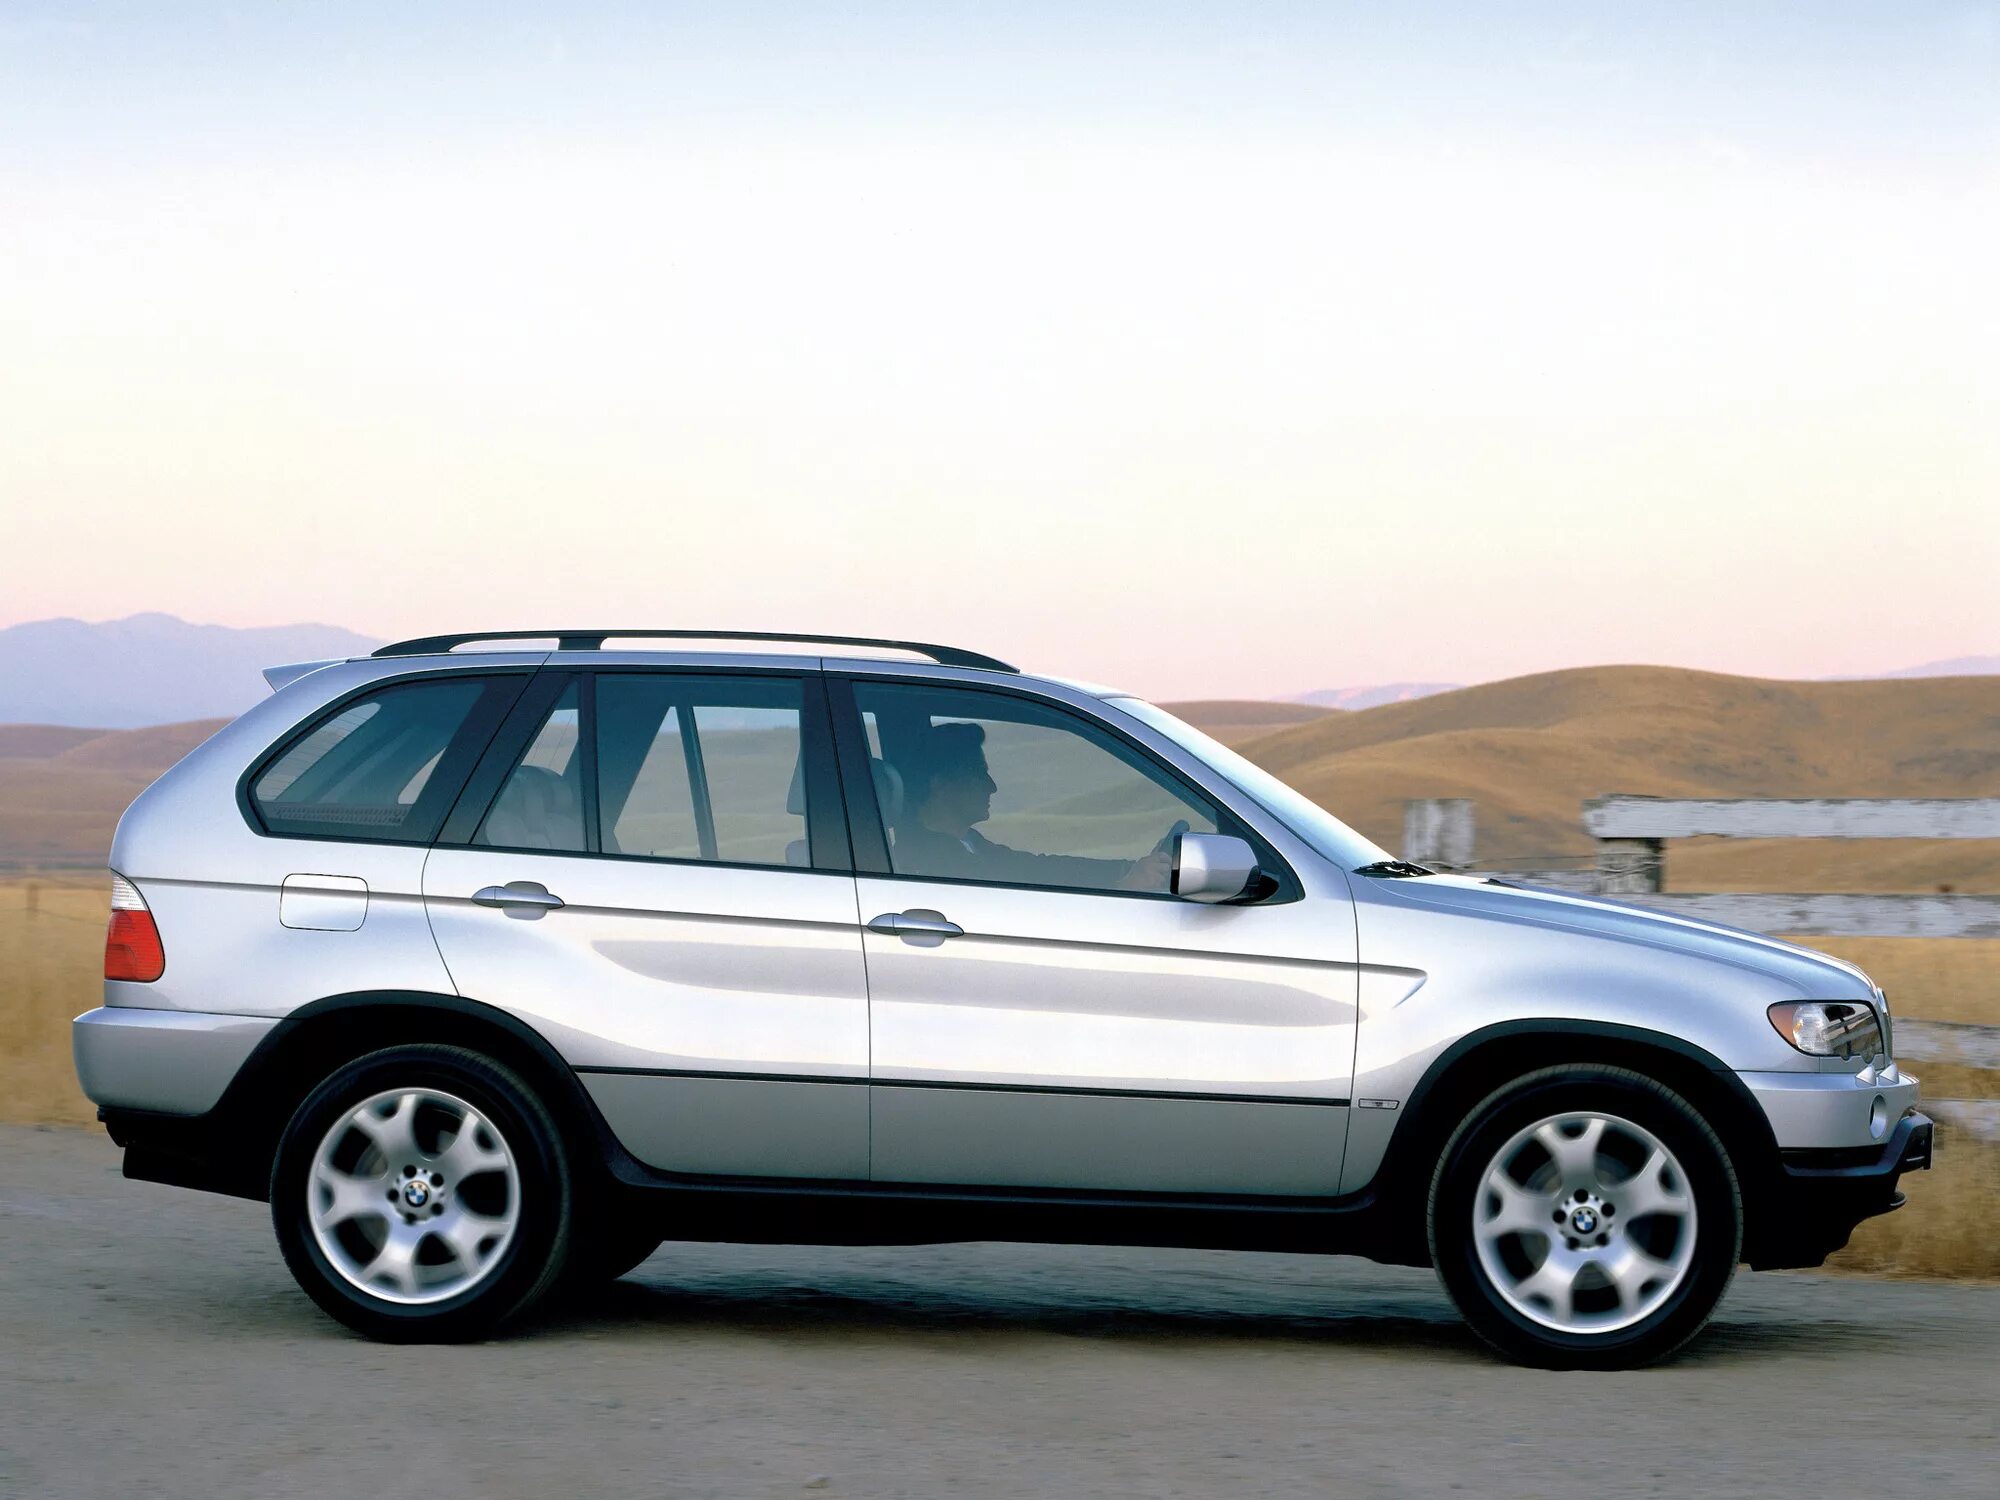 Bmw x5 2006. БМВ х5 1999-2003. БМВ х5 е53 1999. BMW x5 e53 1999. BMW x5 2000.